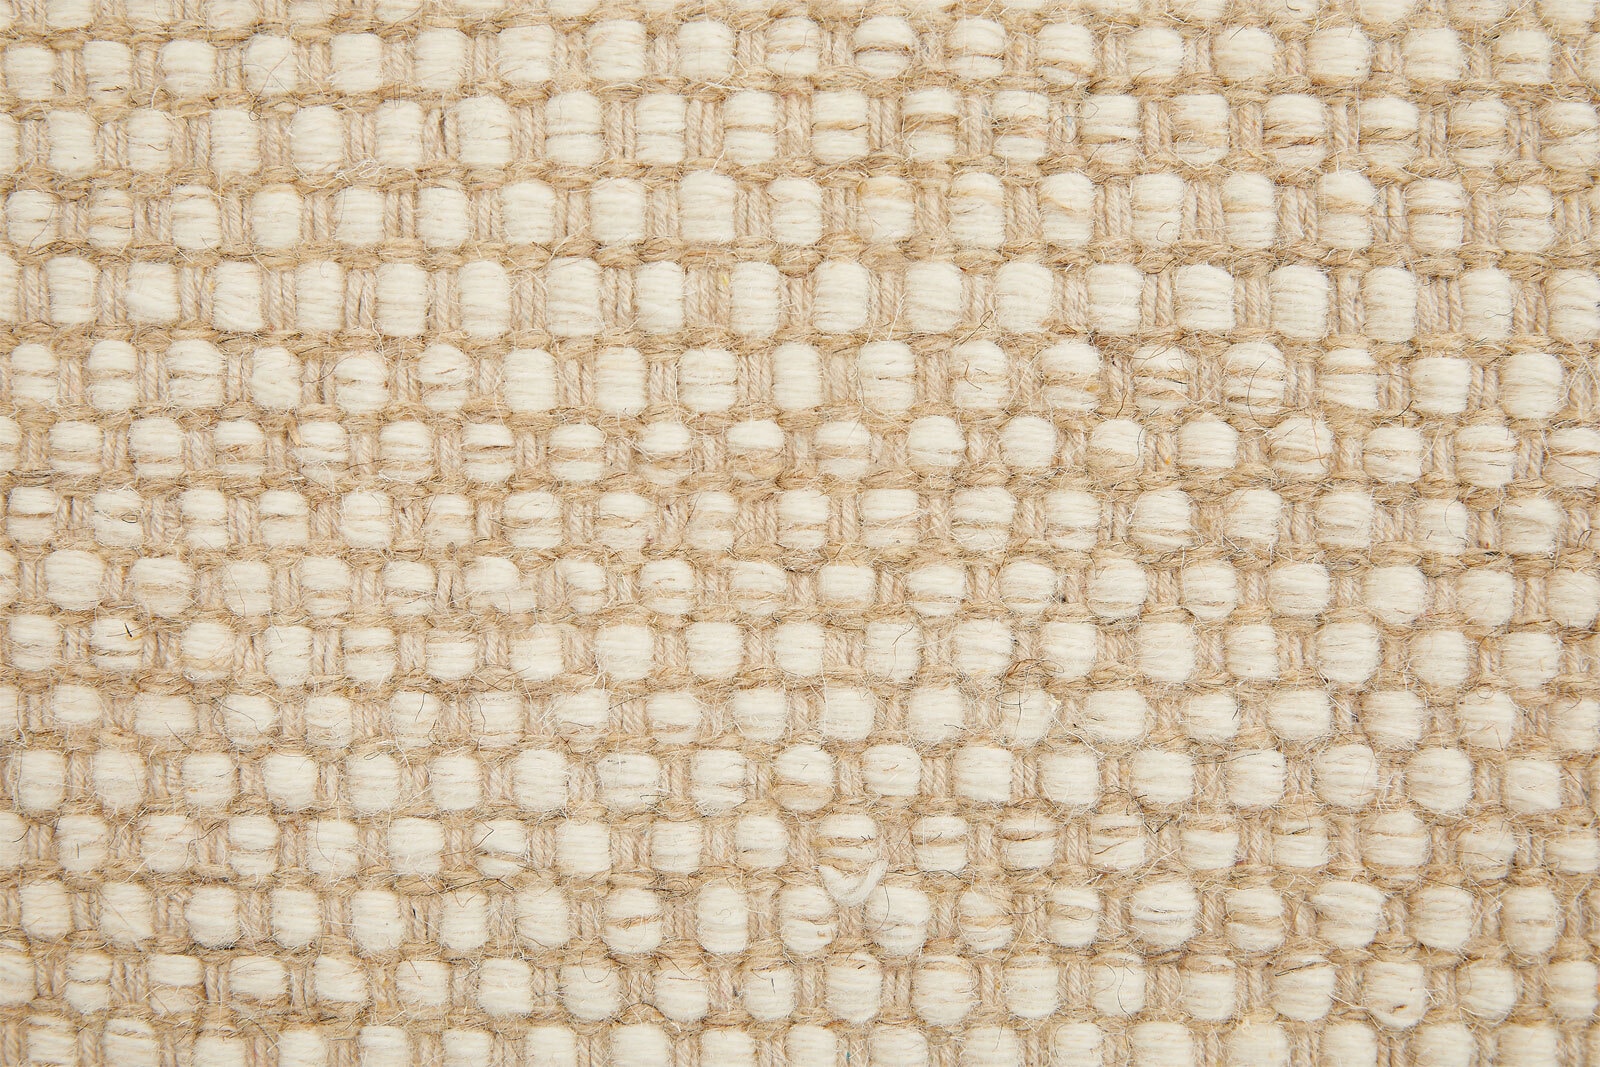 Wollteppich VISBY 120 x 170 cm beige/creme